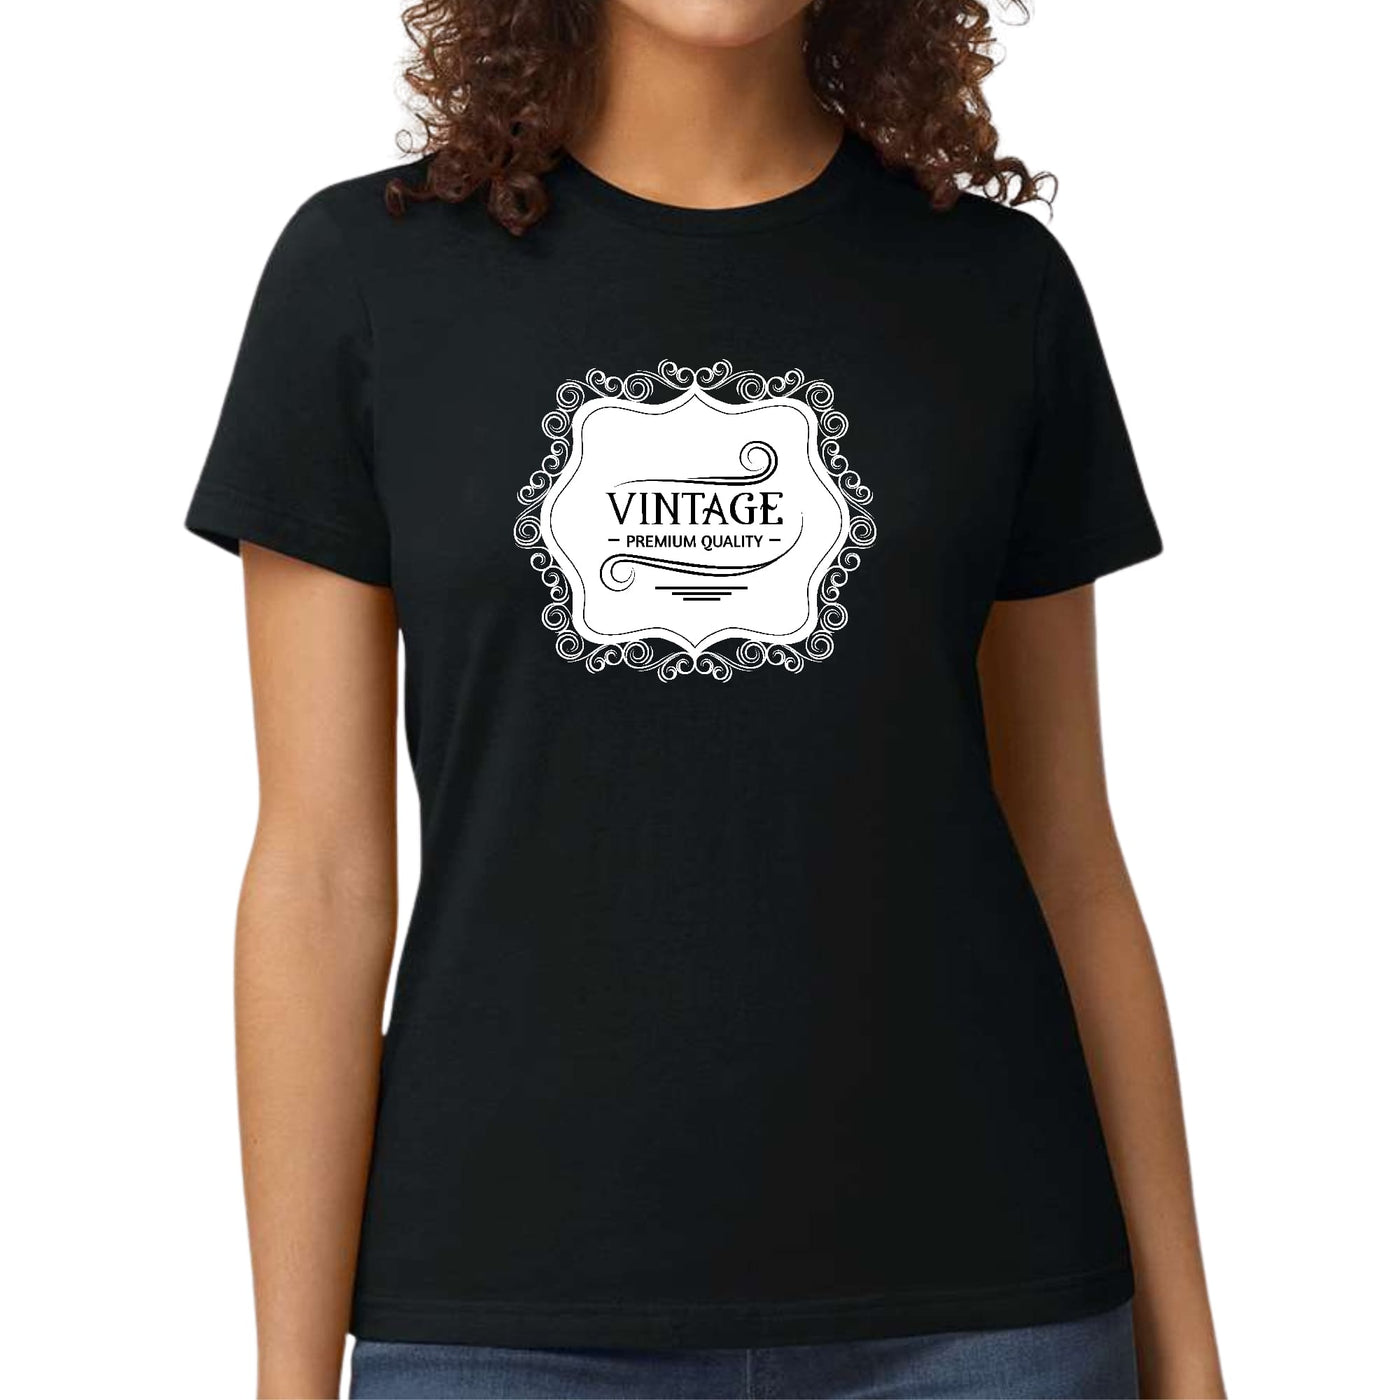 Womens Graphic T - shirt Vintage Premium Quality White Black - T - Shirts